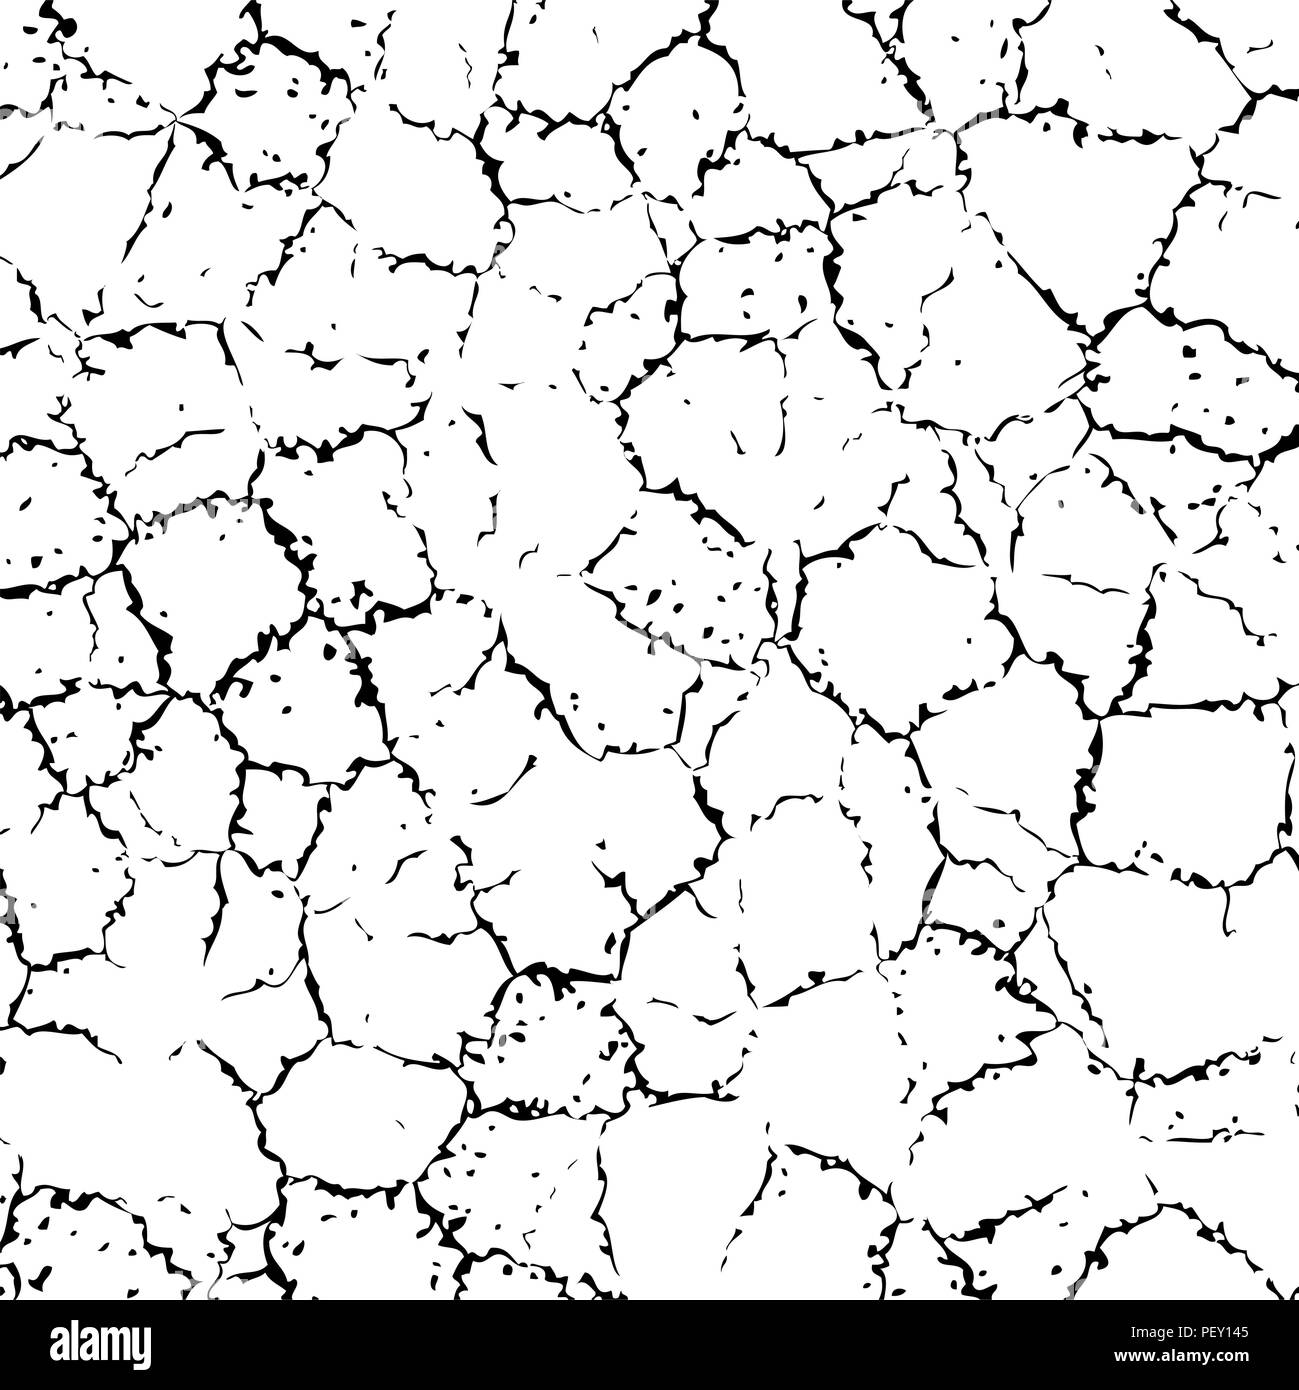 La texture de mur fissuré de vecteur ou de la terre, fond noir et blanc illustration avec fissures abstrait Illustration de Vecteur